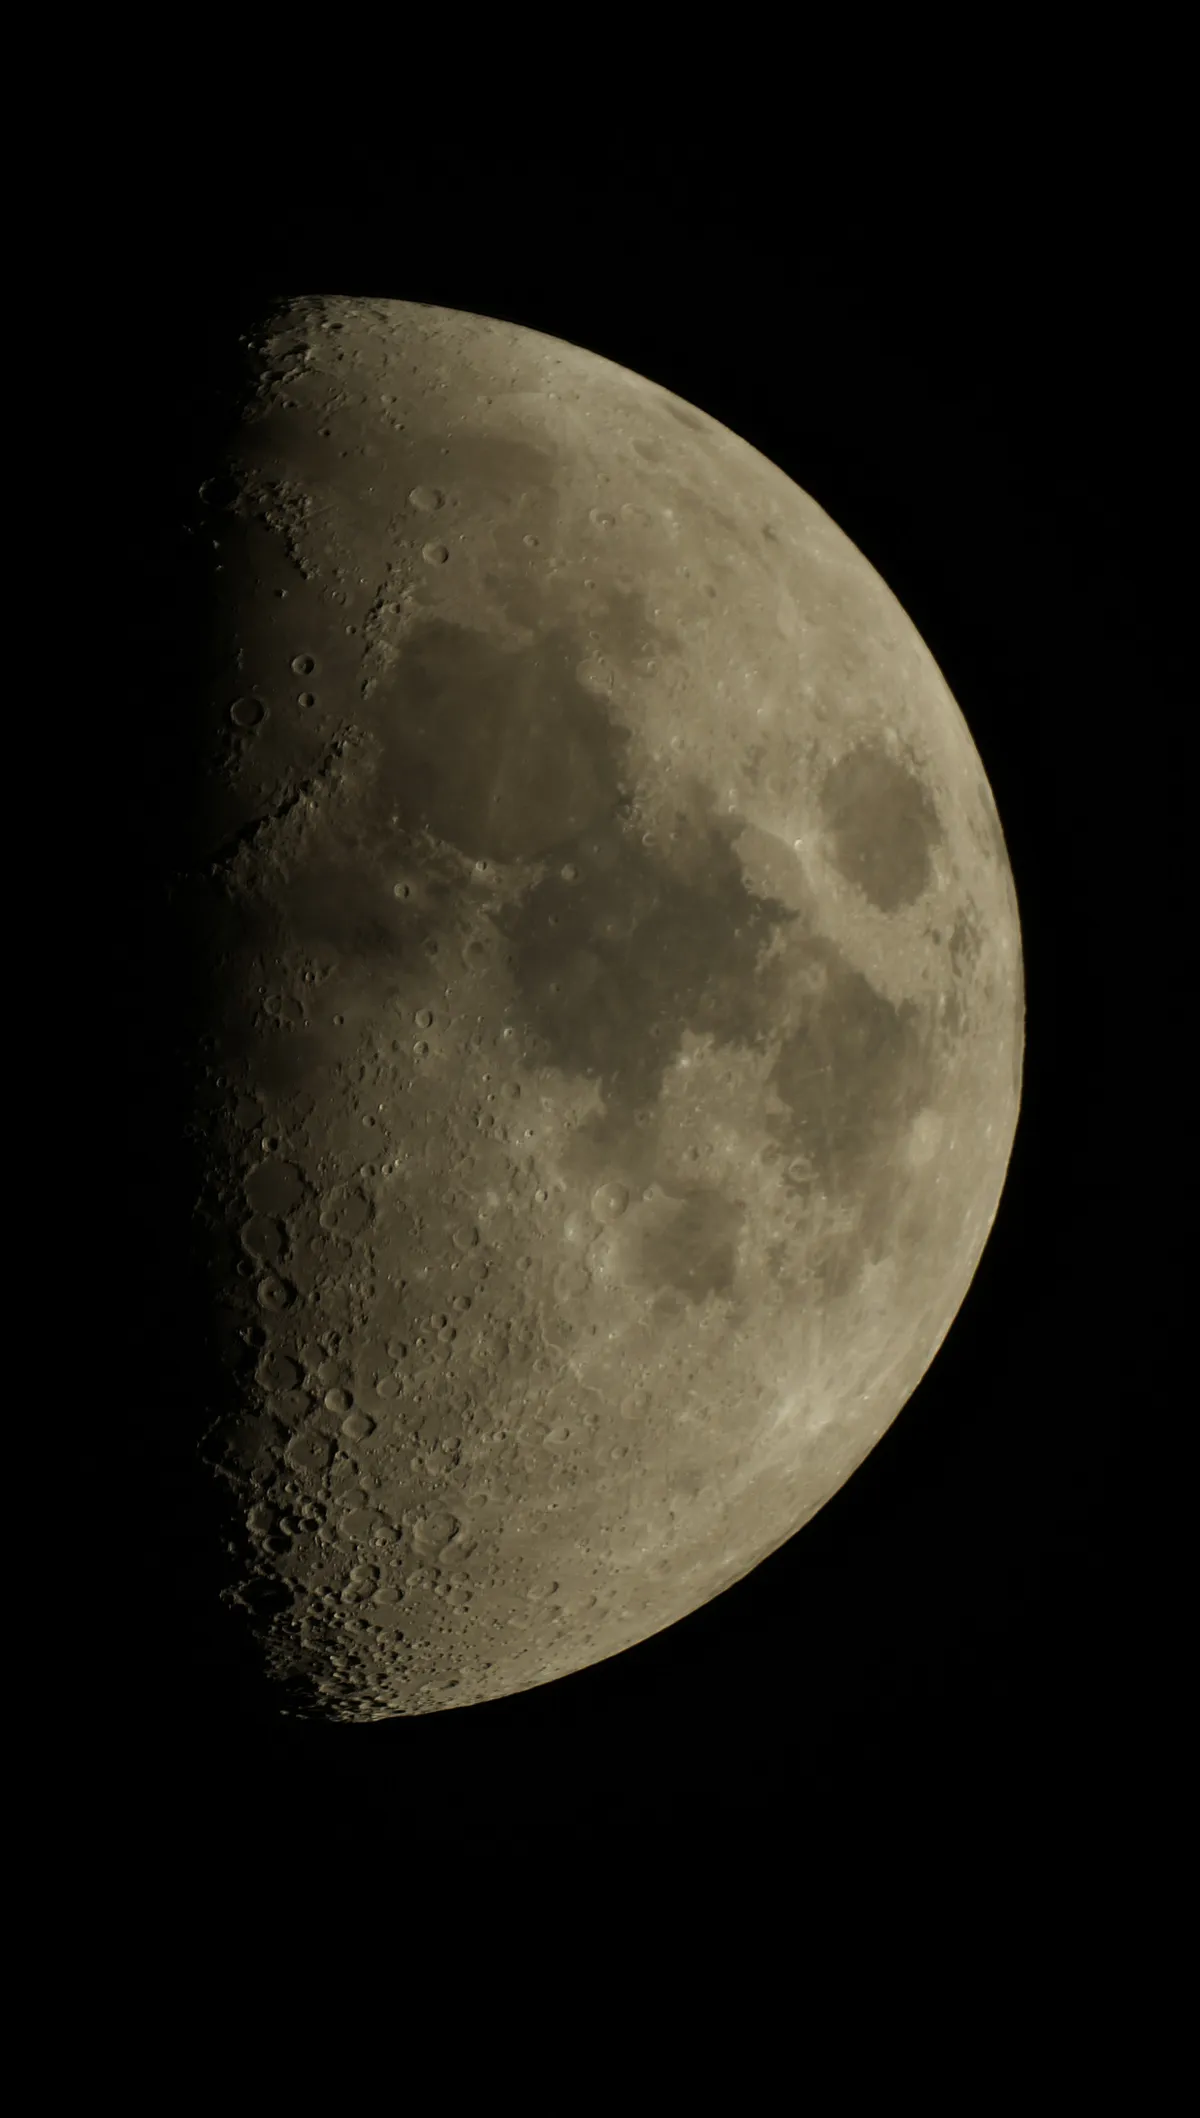 Stack the Moon by Guy Vermeeren, Schoten, Belgium. Equipment: Sony Alpha 58, Maksutov Orion 102mm